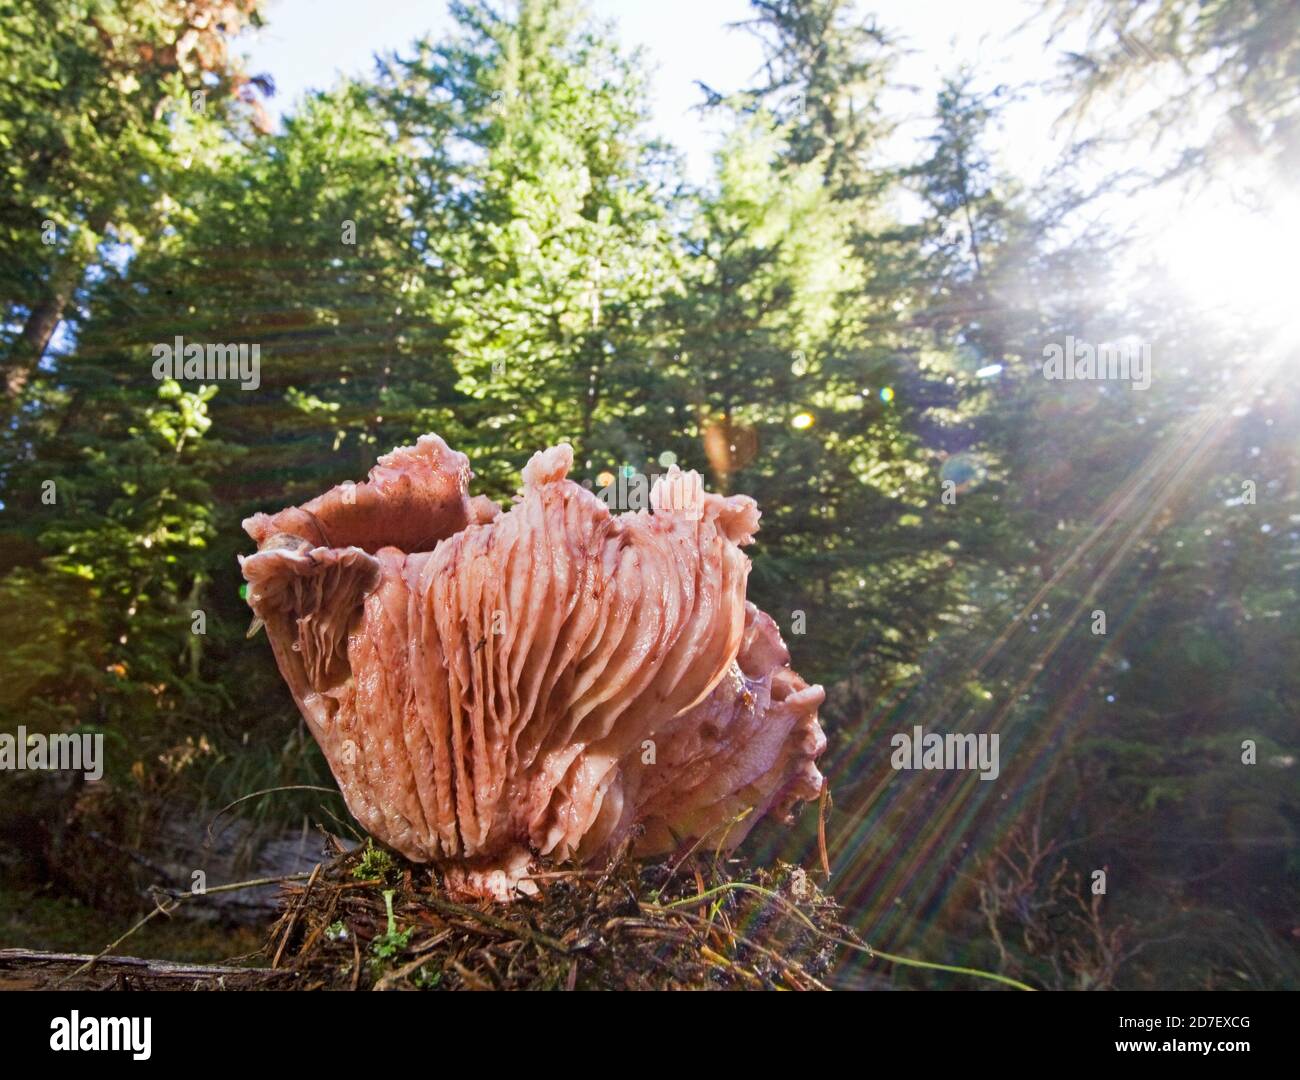 Hygrophorus Täubling, ein großer rosafarbener Pilz, der im pazifischen Nordwesten gefunden wurde. Dieses Hotel liegt in den Cascade Mountains im Zentrum von Oregon. Nicht essbar. Stockfoto